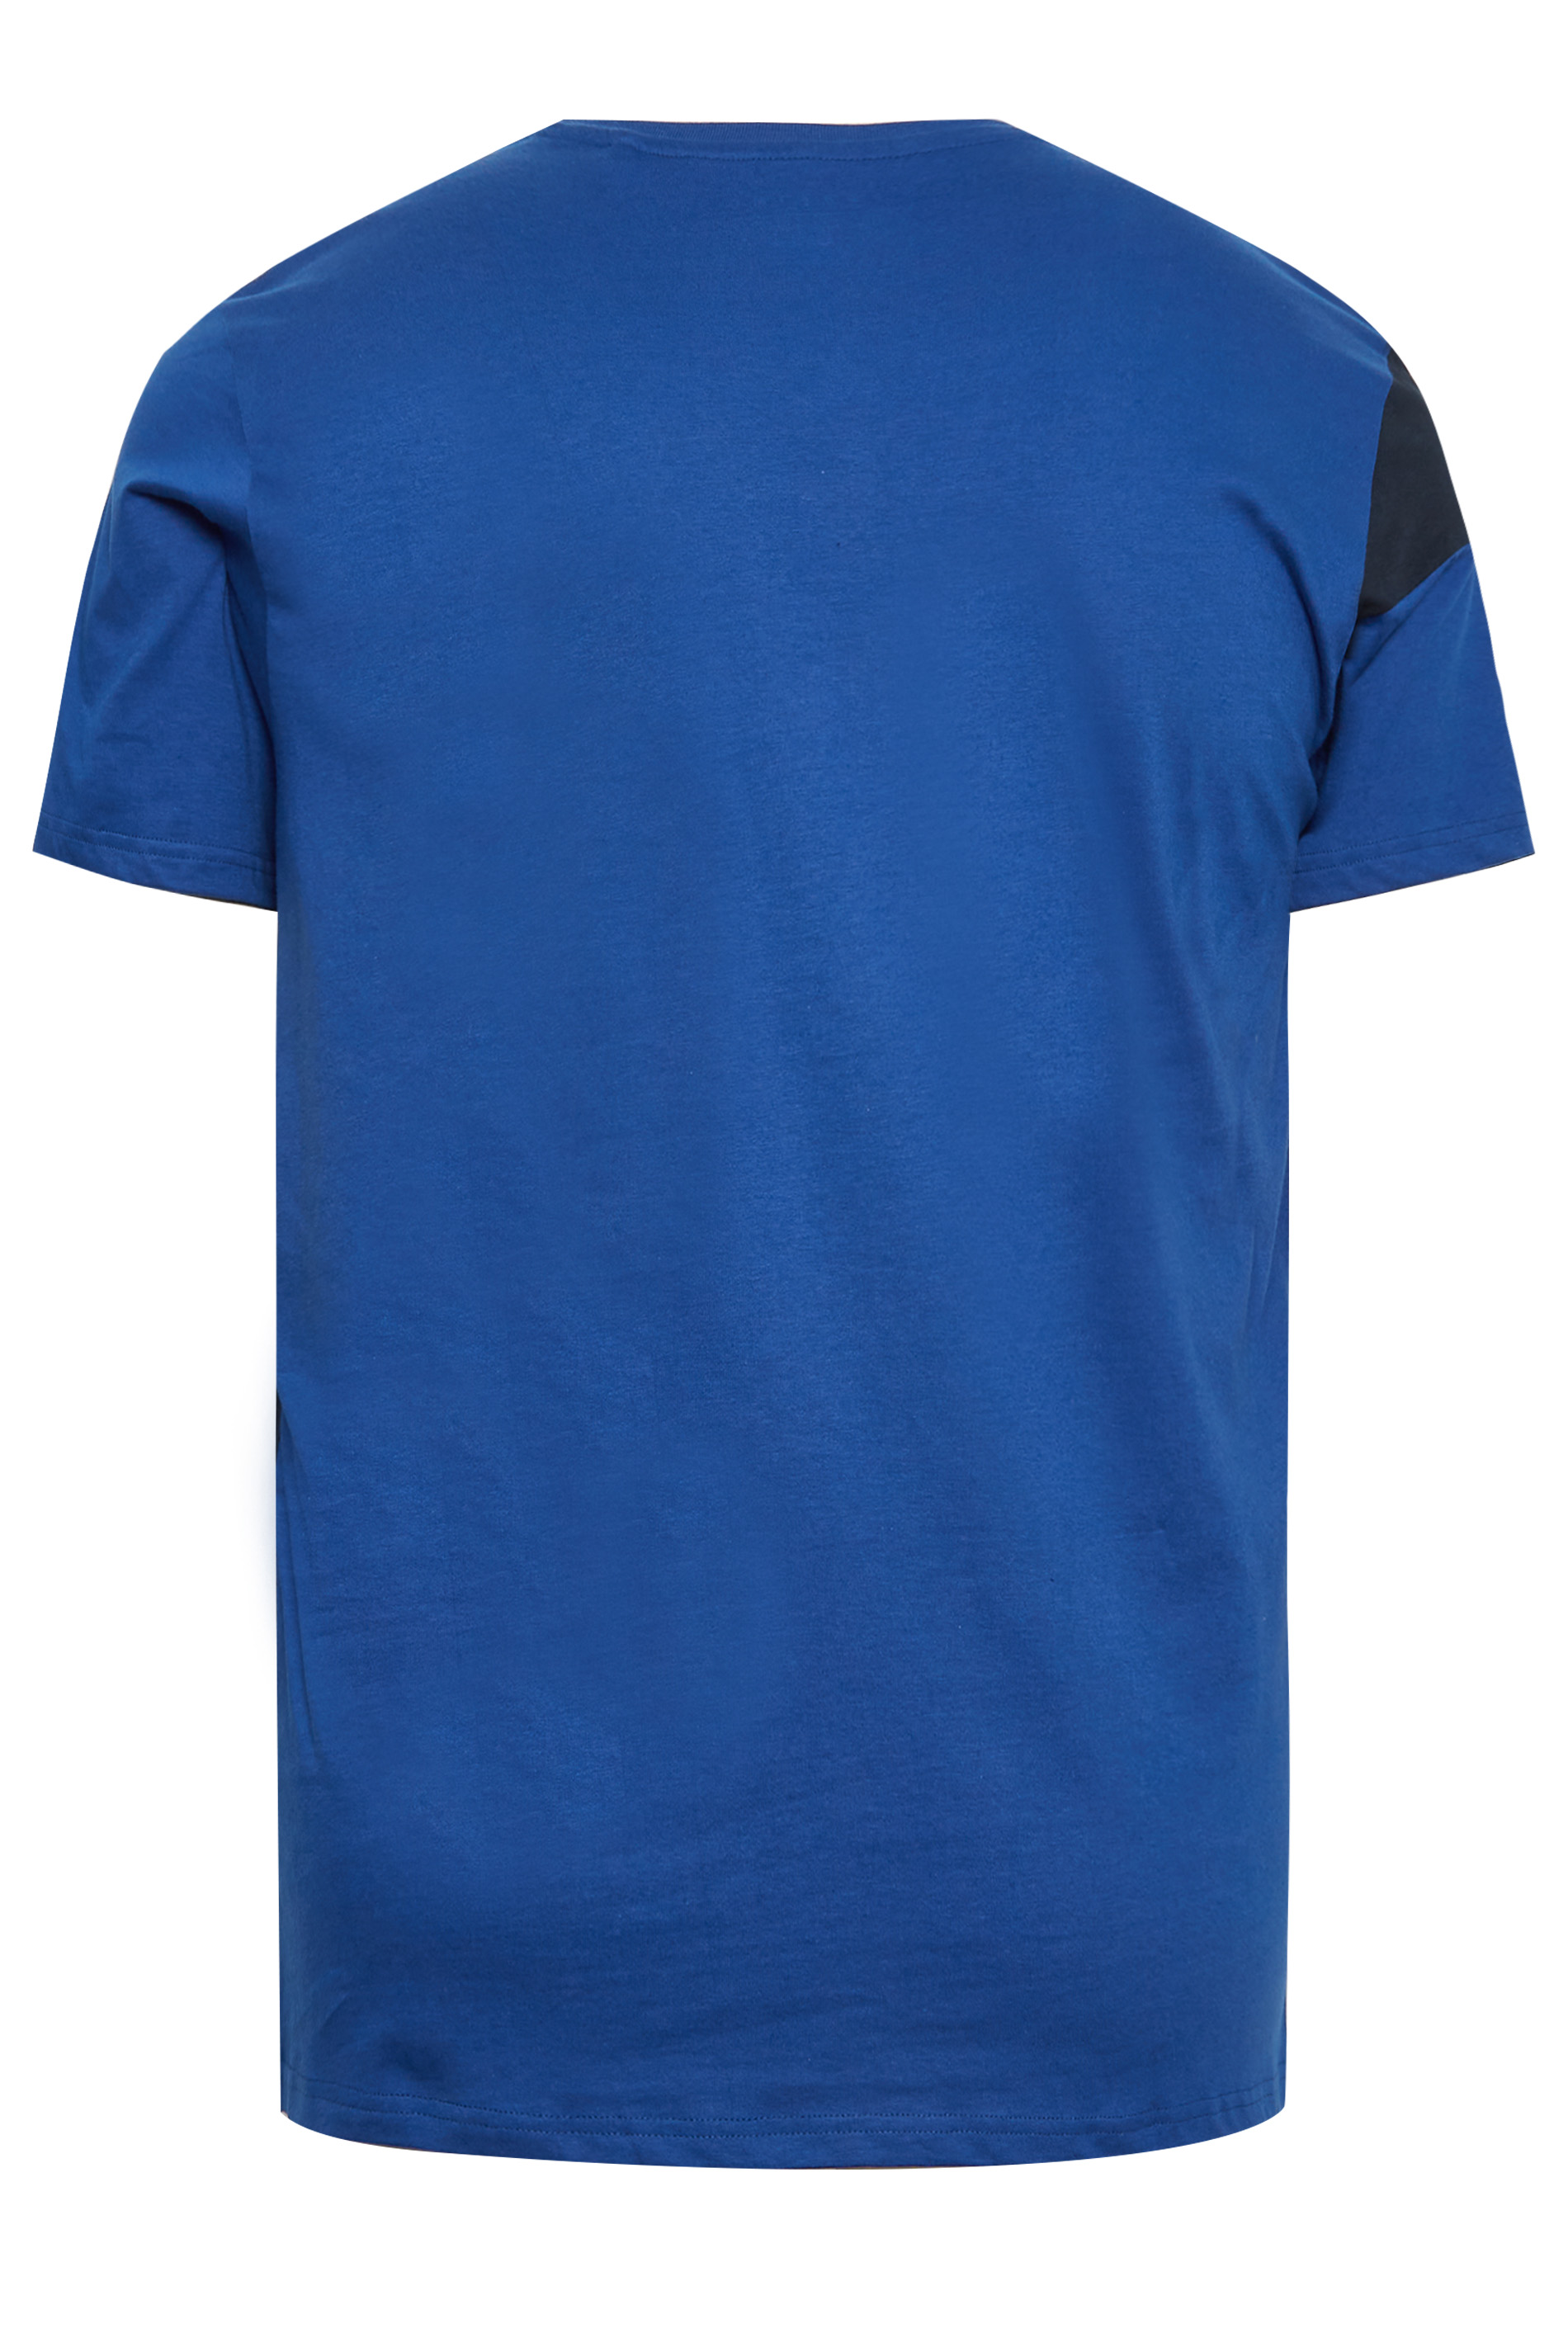 BadRhino Big & Tall Blue Diagonal Stripe T-Shirt | BadRhino